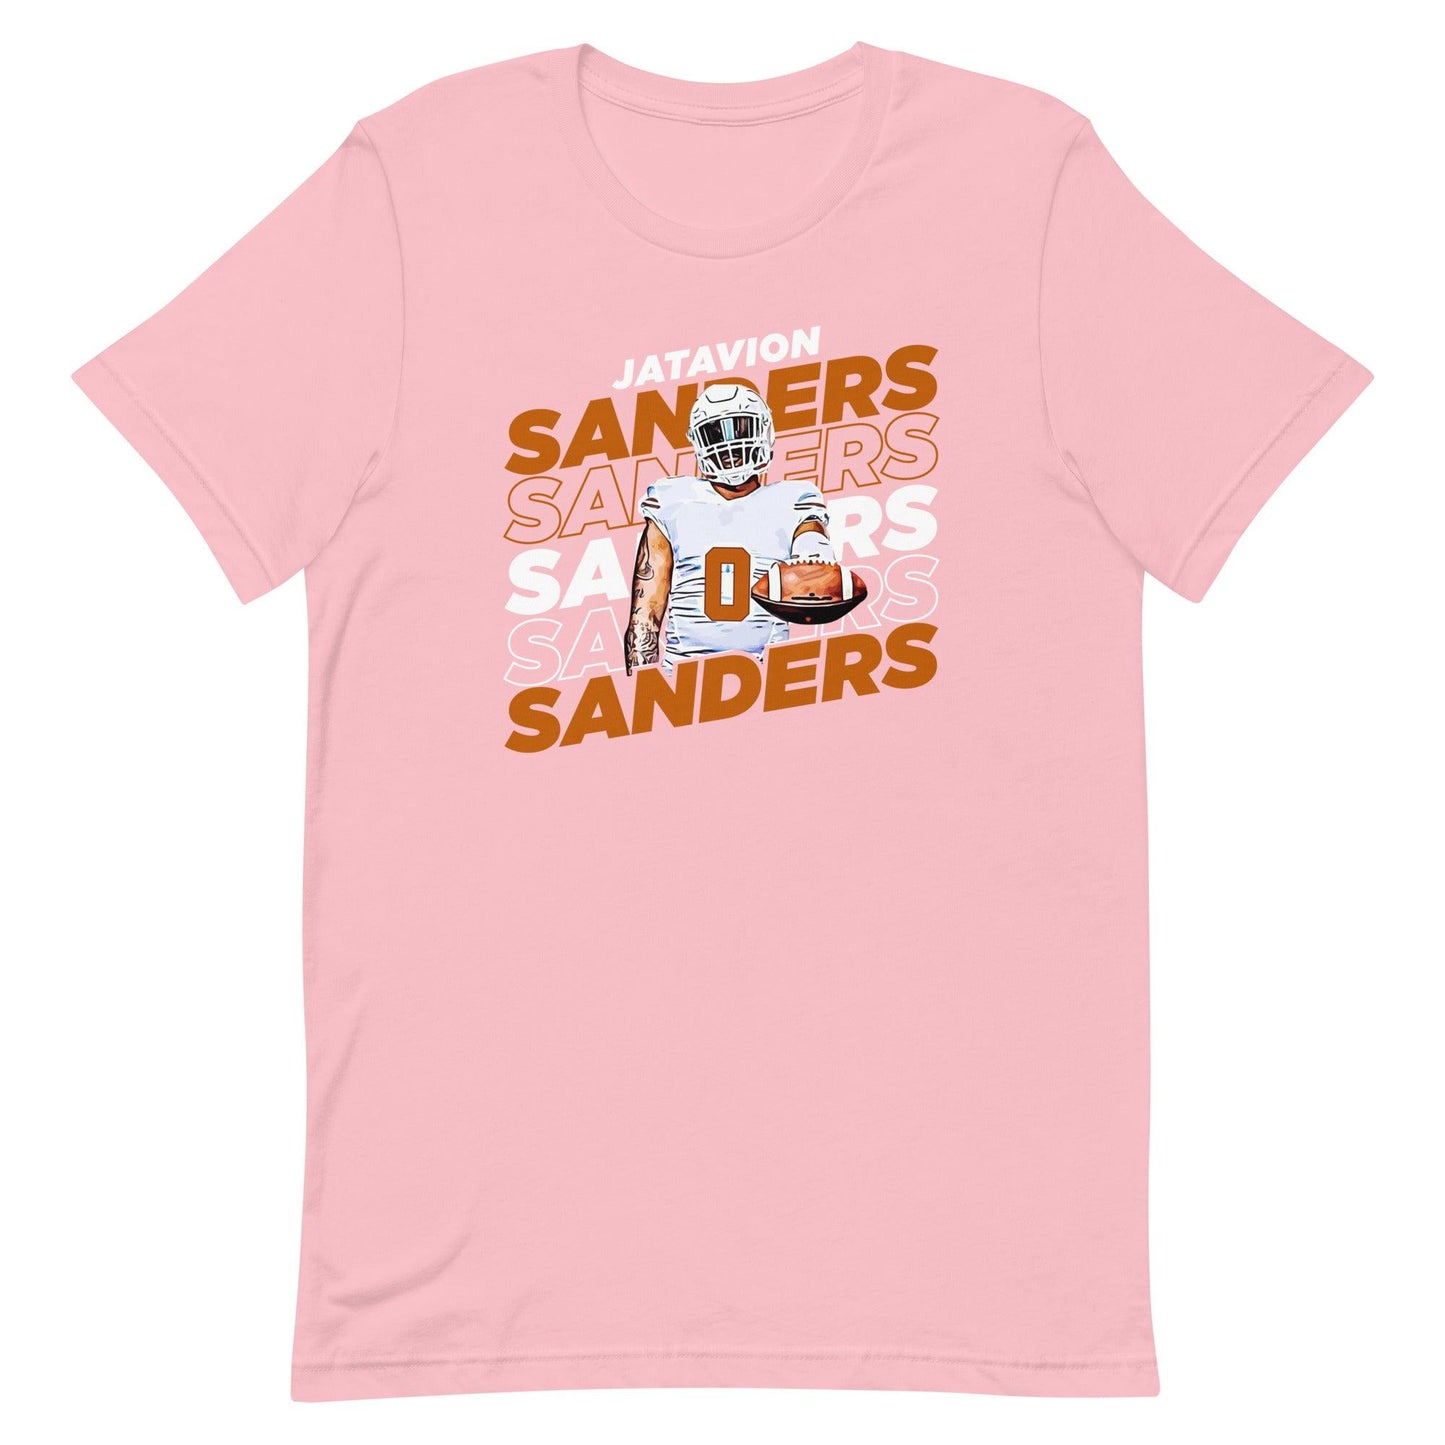 Jatavion Sanders "Repeat" t-shirt - Fan Arch